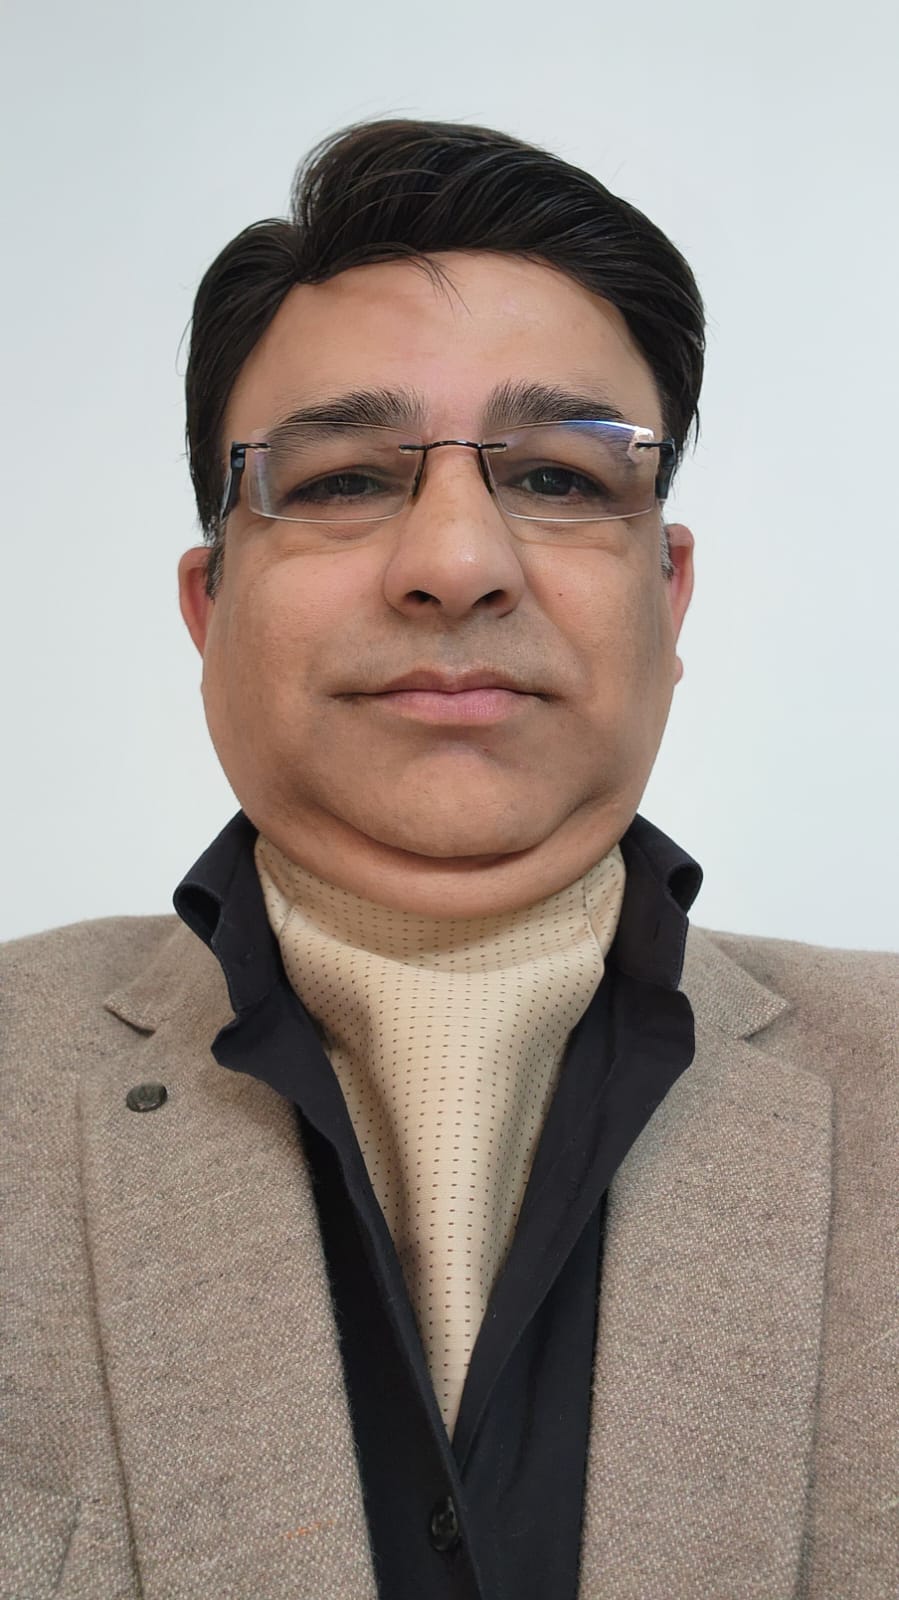 Mr Sahhil Sethi